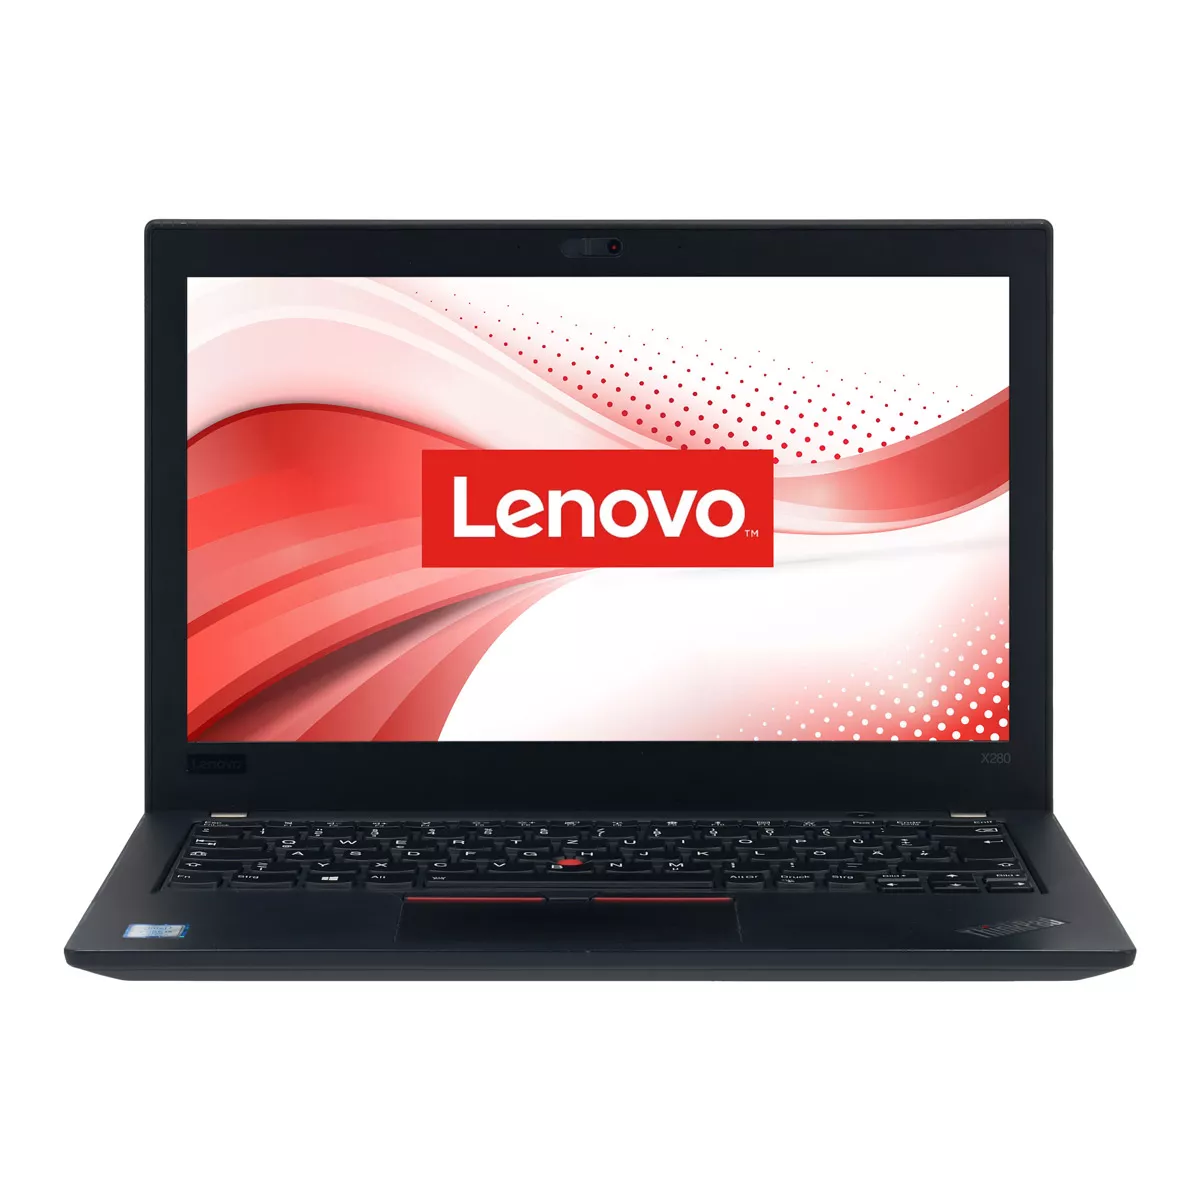 Lenovo ThinkPad X280 Core i5 7300U 8 GB 240 GB M.2 nVME SSD Webcam B